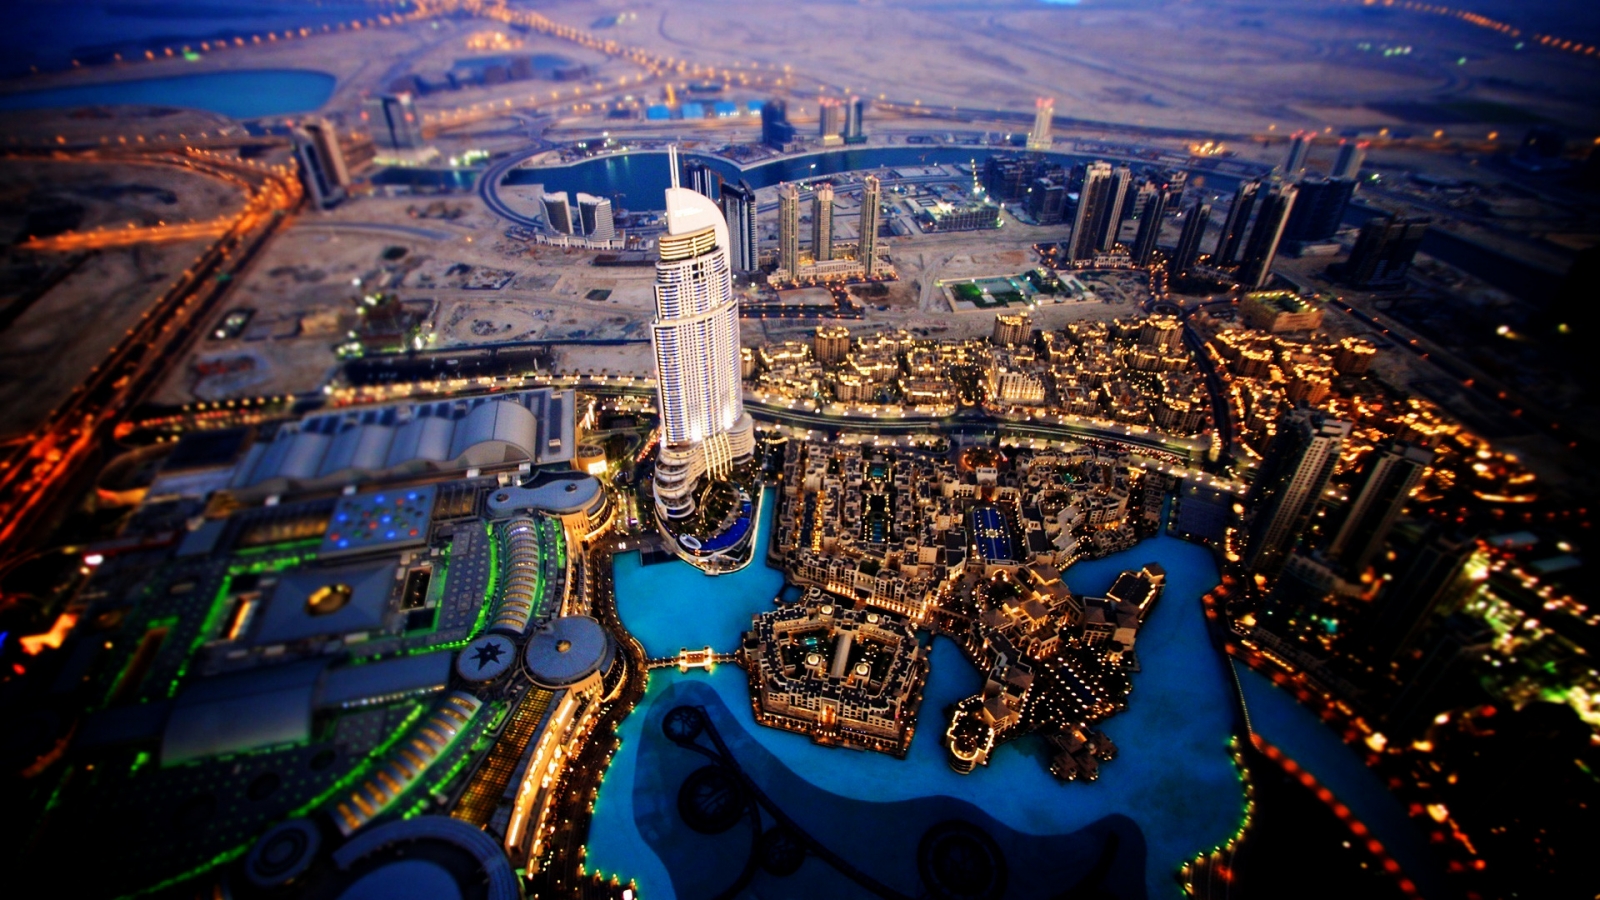 Dubai Sky View for 1600 x 900 HDTV resolution